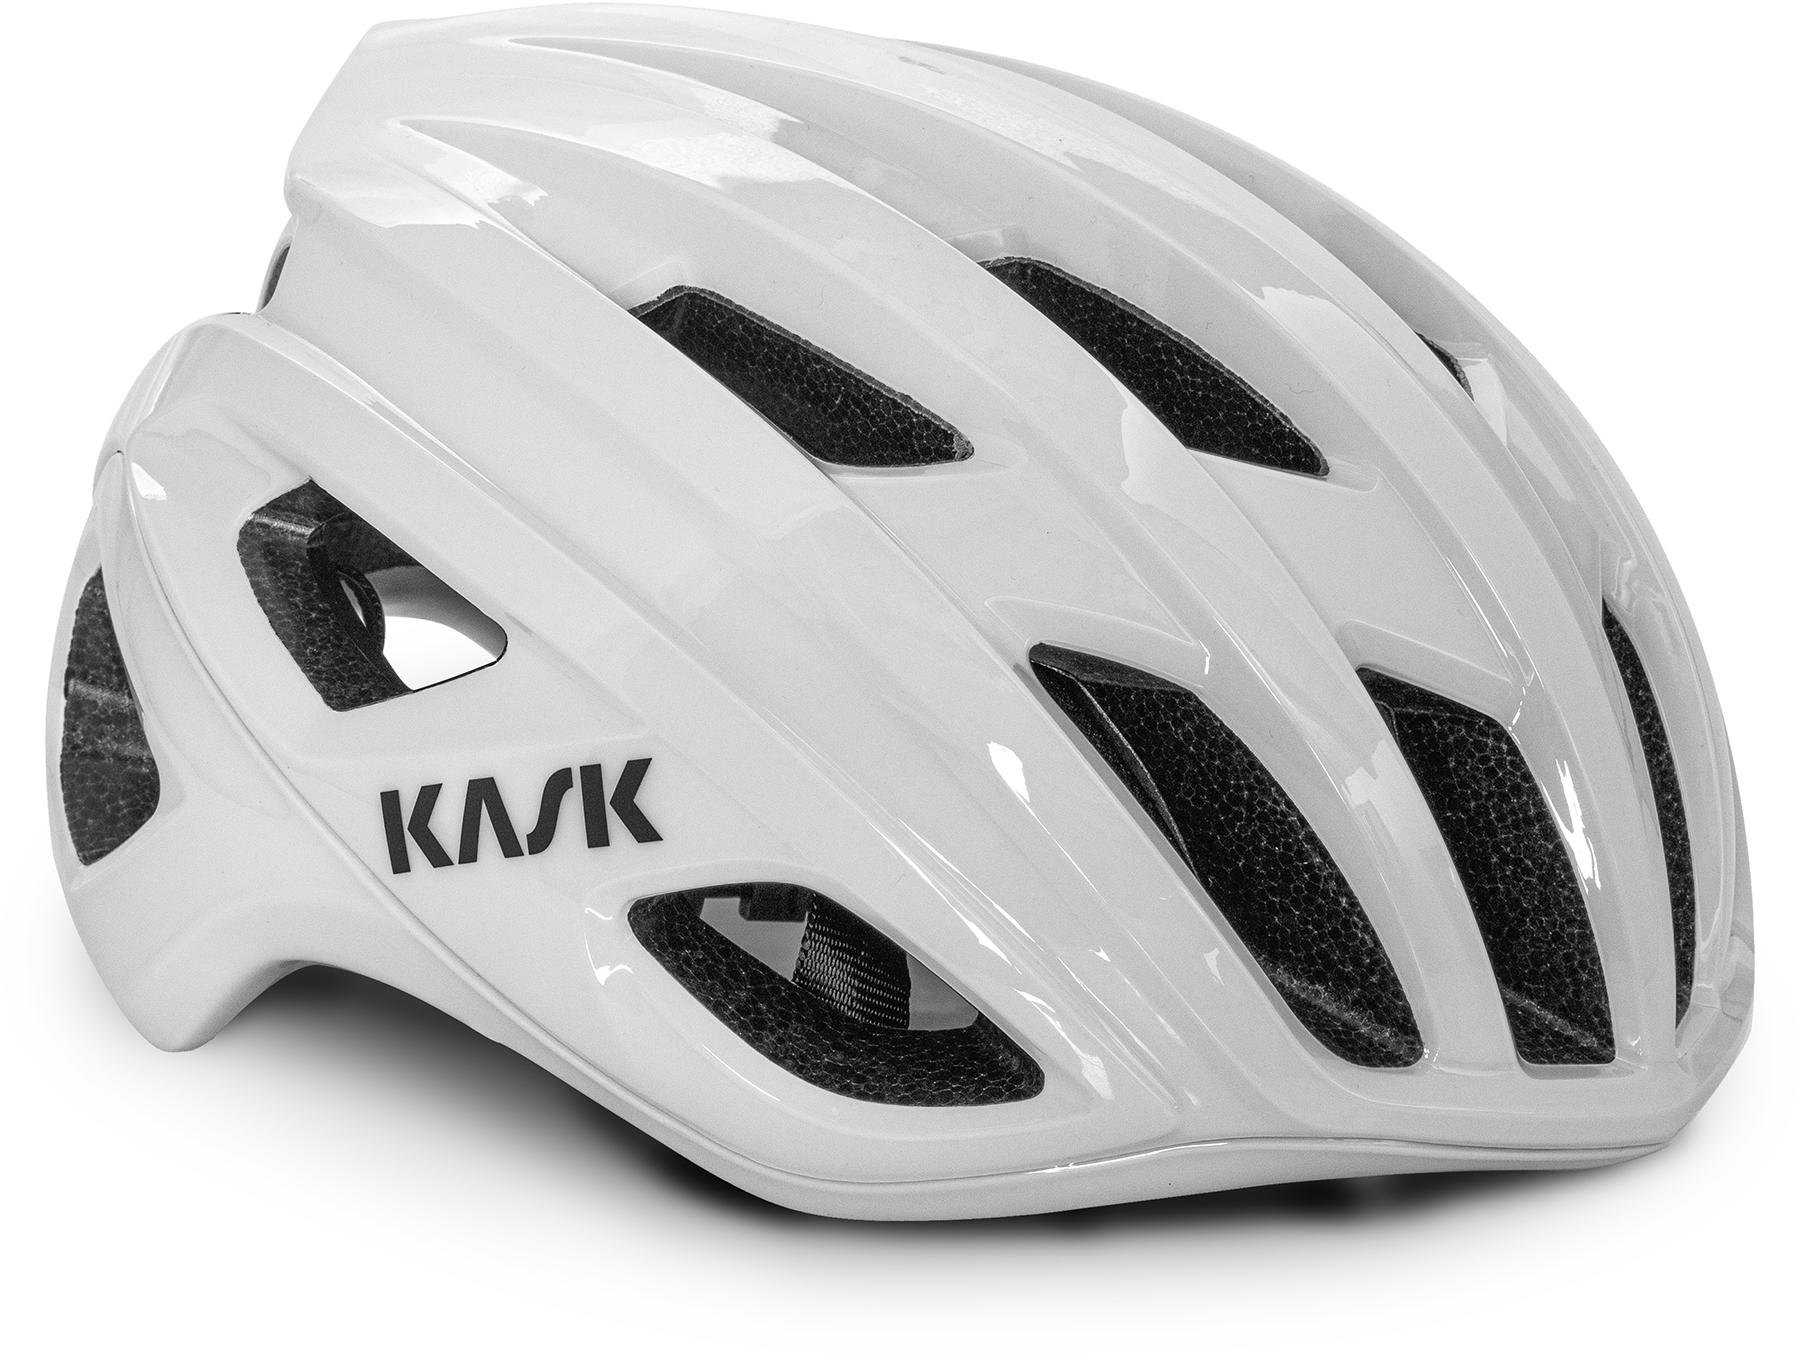 Kask Mojito3 Road Cycling Helmet (wg11) - White